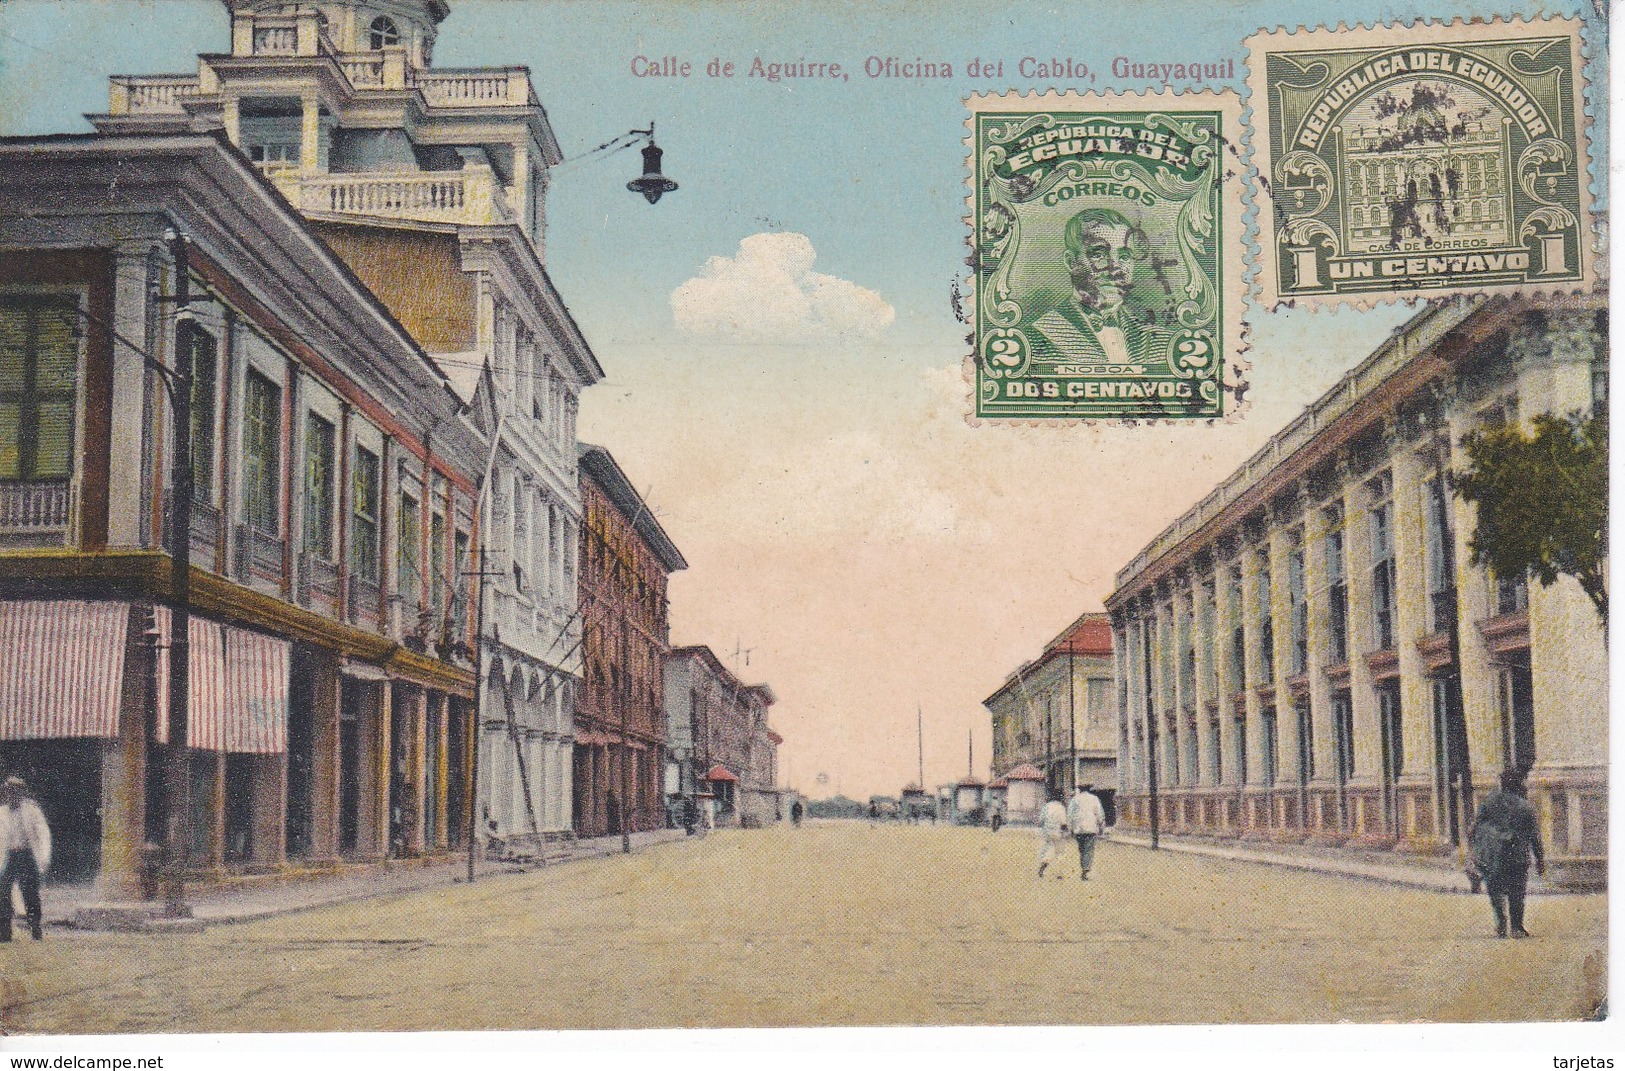 POSTAL DE GUAYAQUIL DE LA CALLE DE AGUIRRE - OFICINA DEL CABLO DEL AÑO 1924  (VICTOR SANCHEZ - Z.BALLEN) ECUADOR - Ecuador